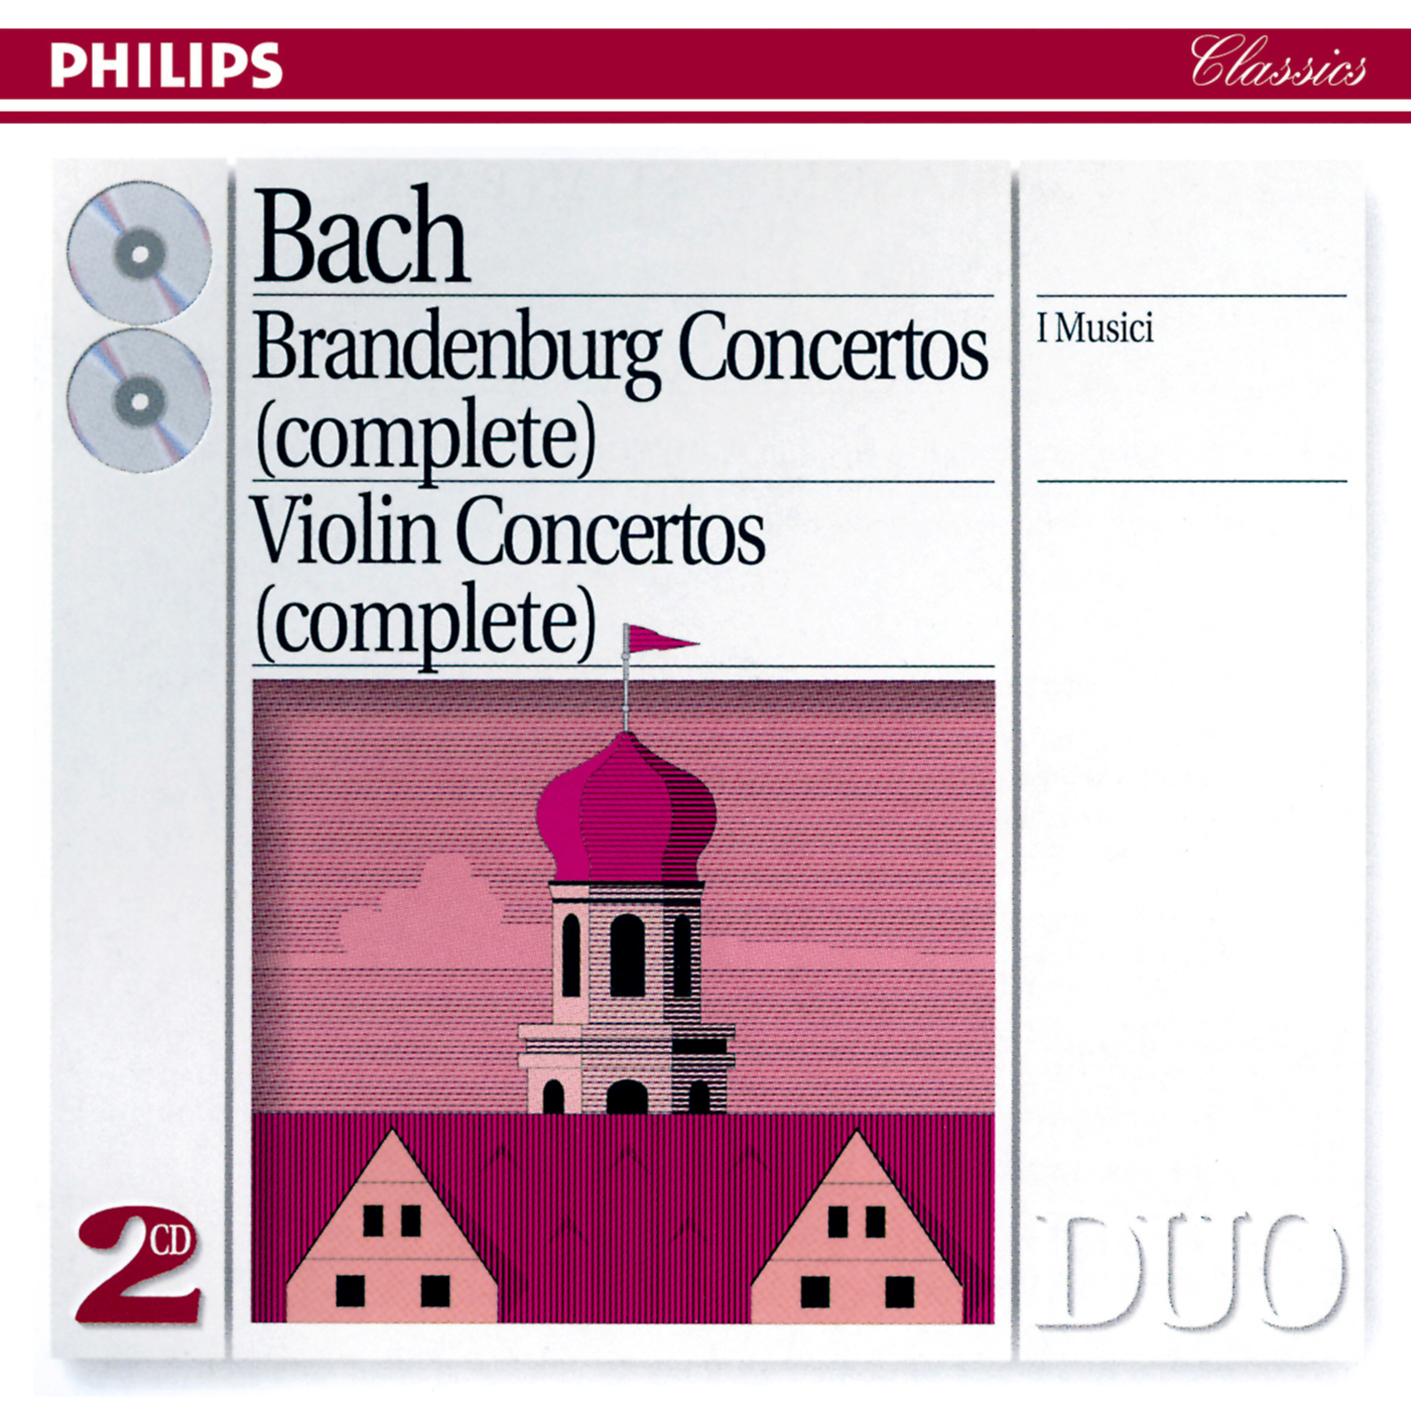 I Musici - Violin Concerto No.2 In E, BWV 1042:3. Allegro assai